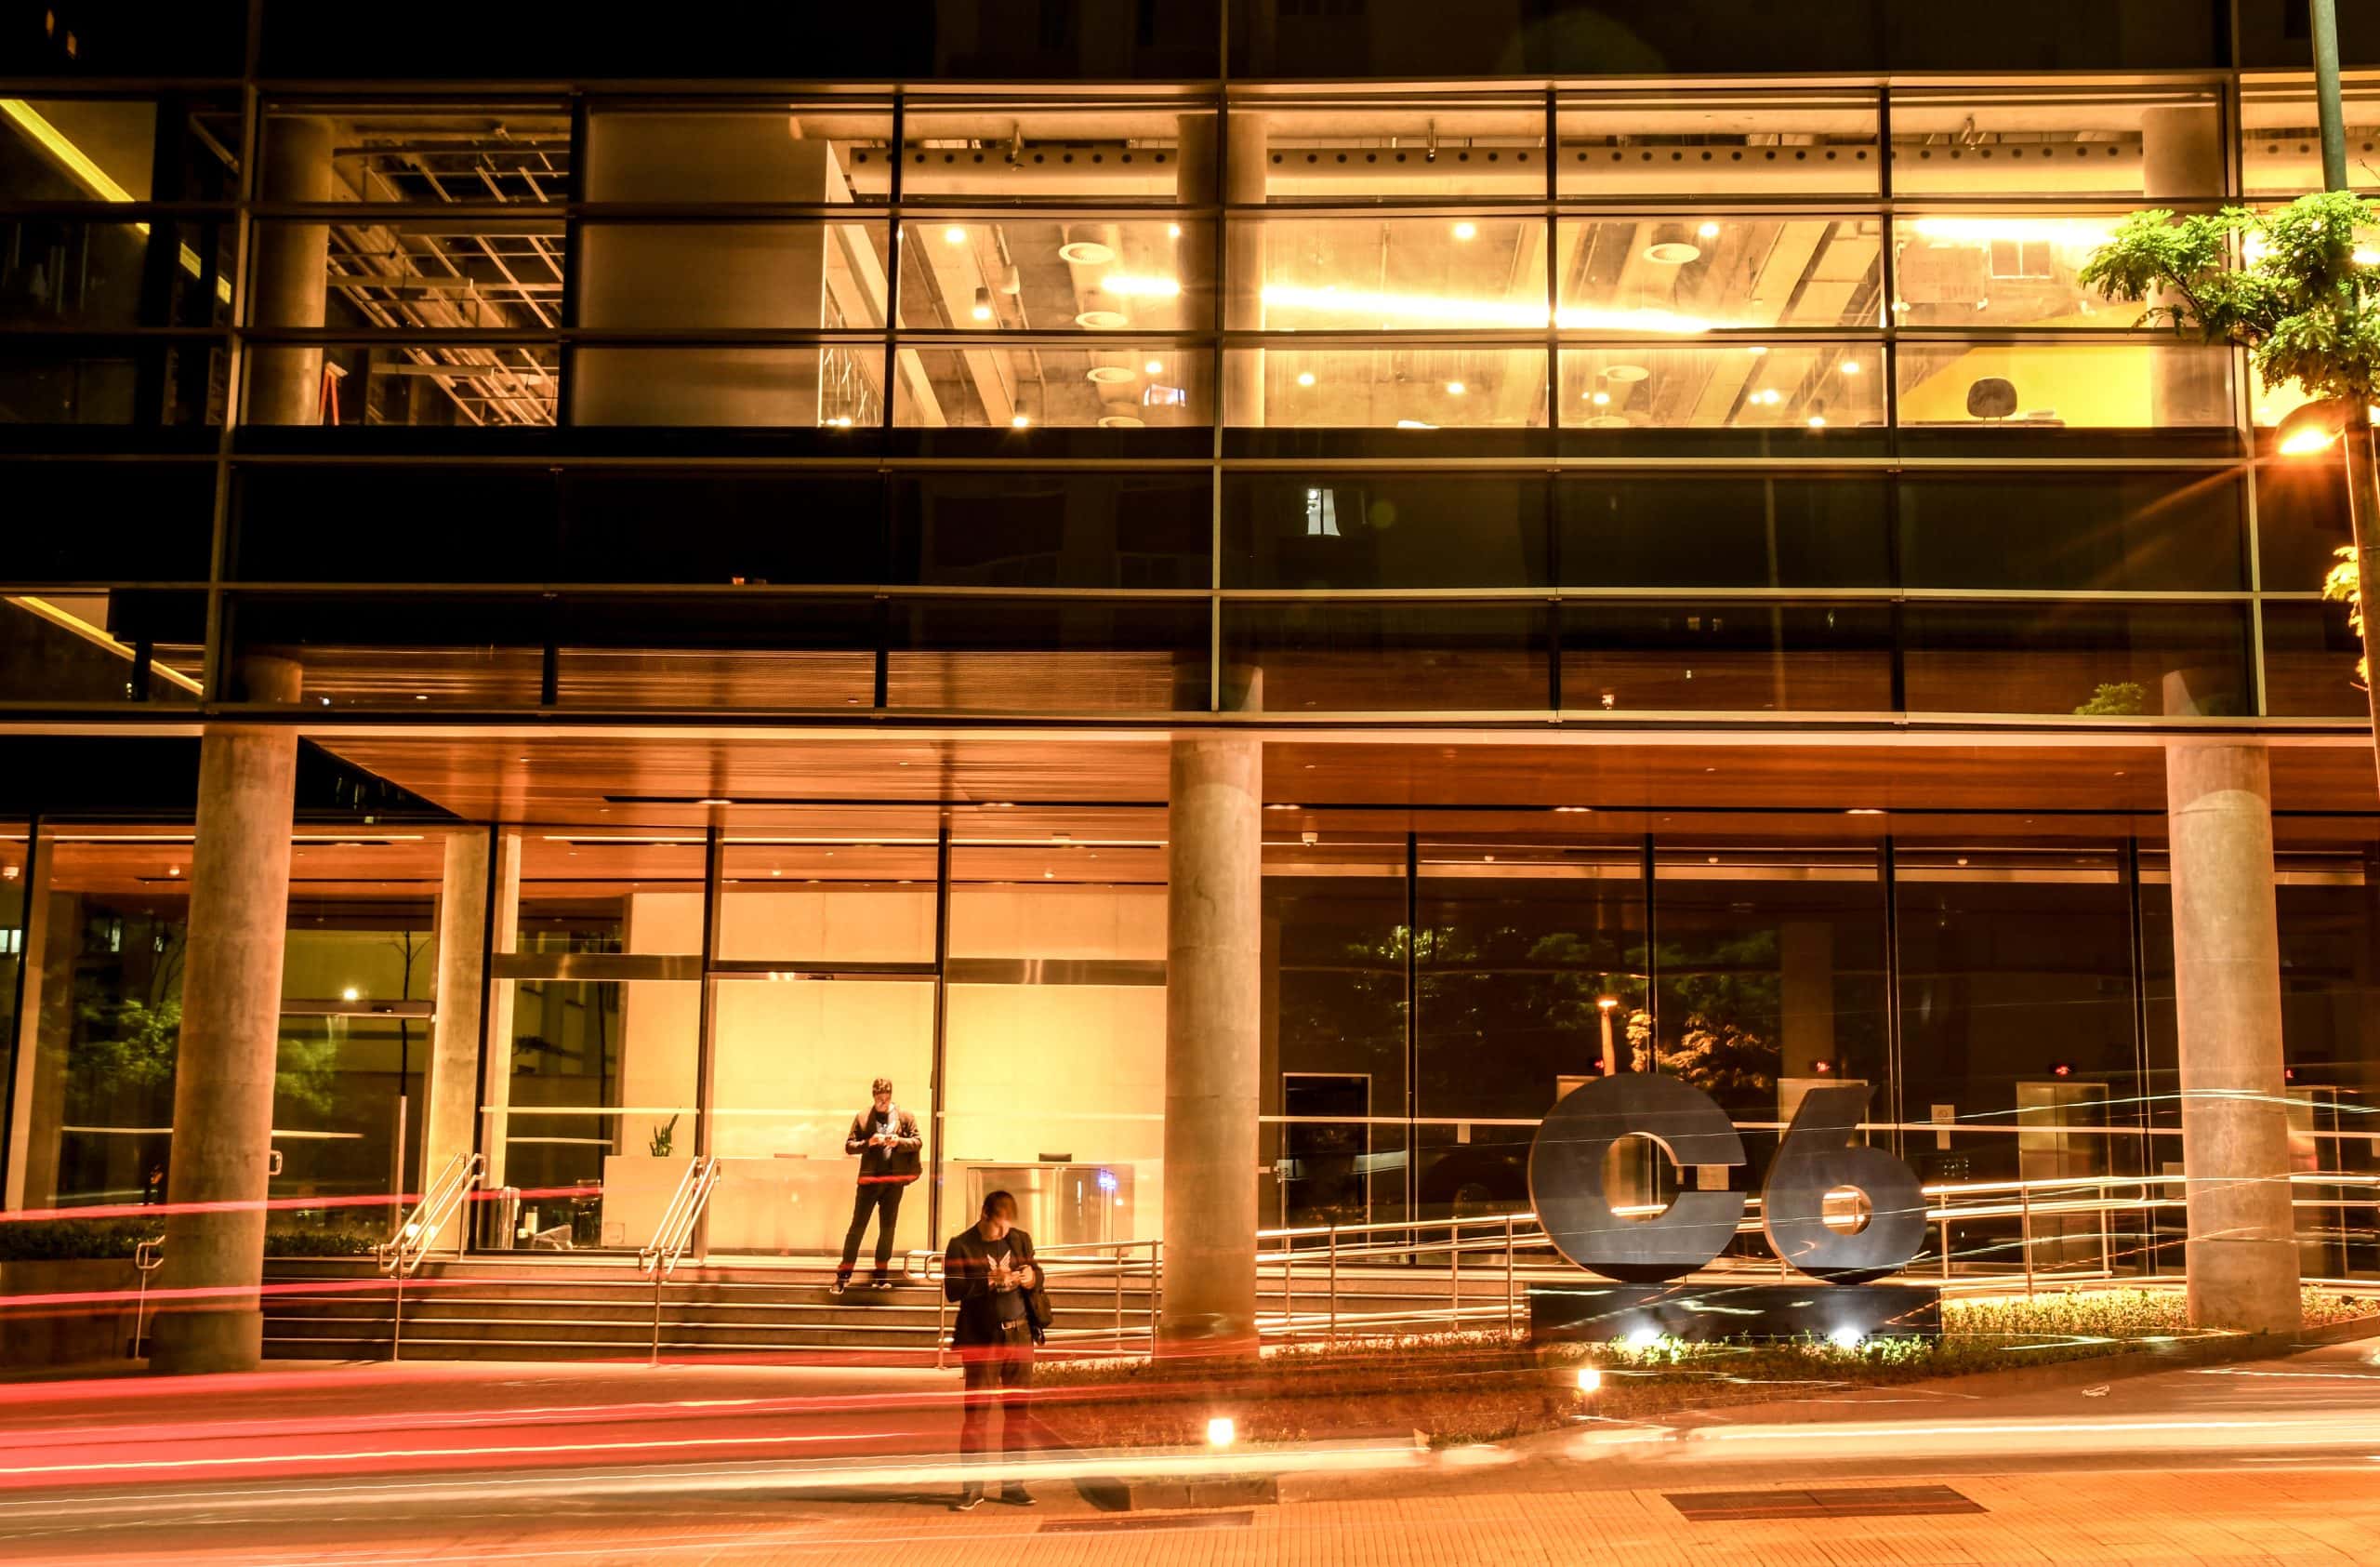 Foto noturna da fachada do prédio Carbon do C6 Bank, com o logo do C6 no jardim frontal do prédio em primeiro plano, a fachada do térreo iluminada com luzes em tom de bronze e duas pessoas ao fundo em pé